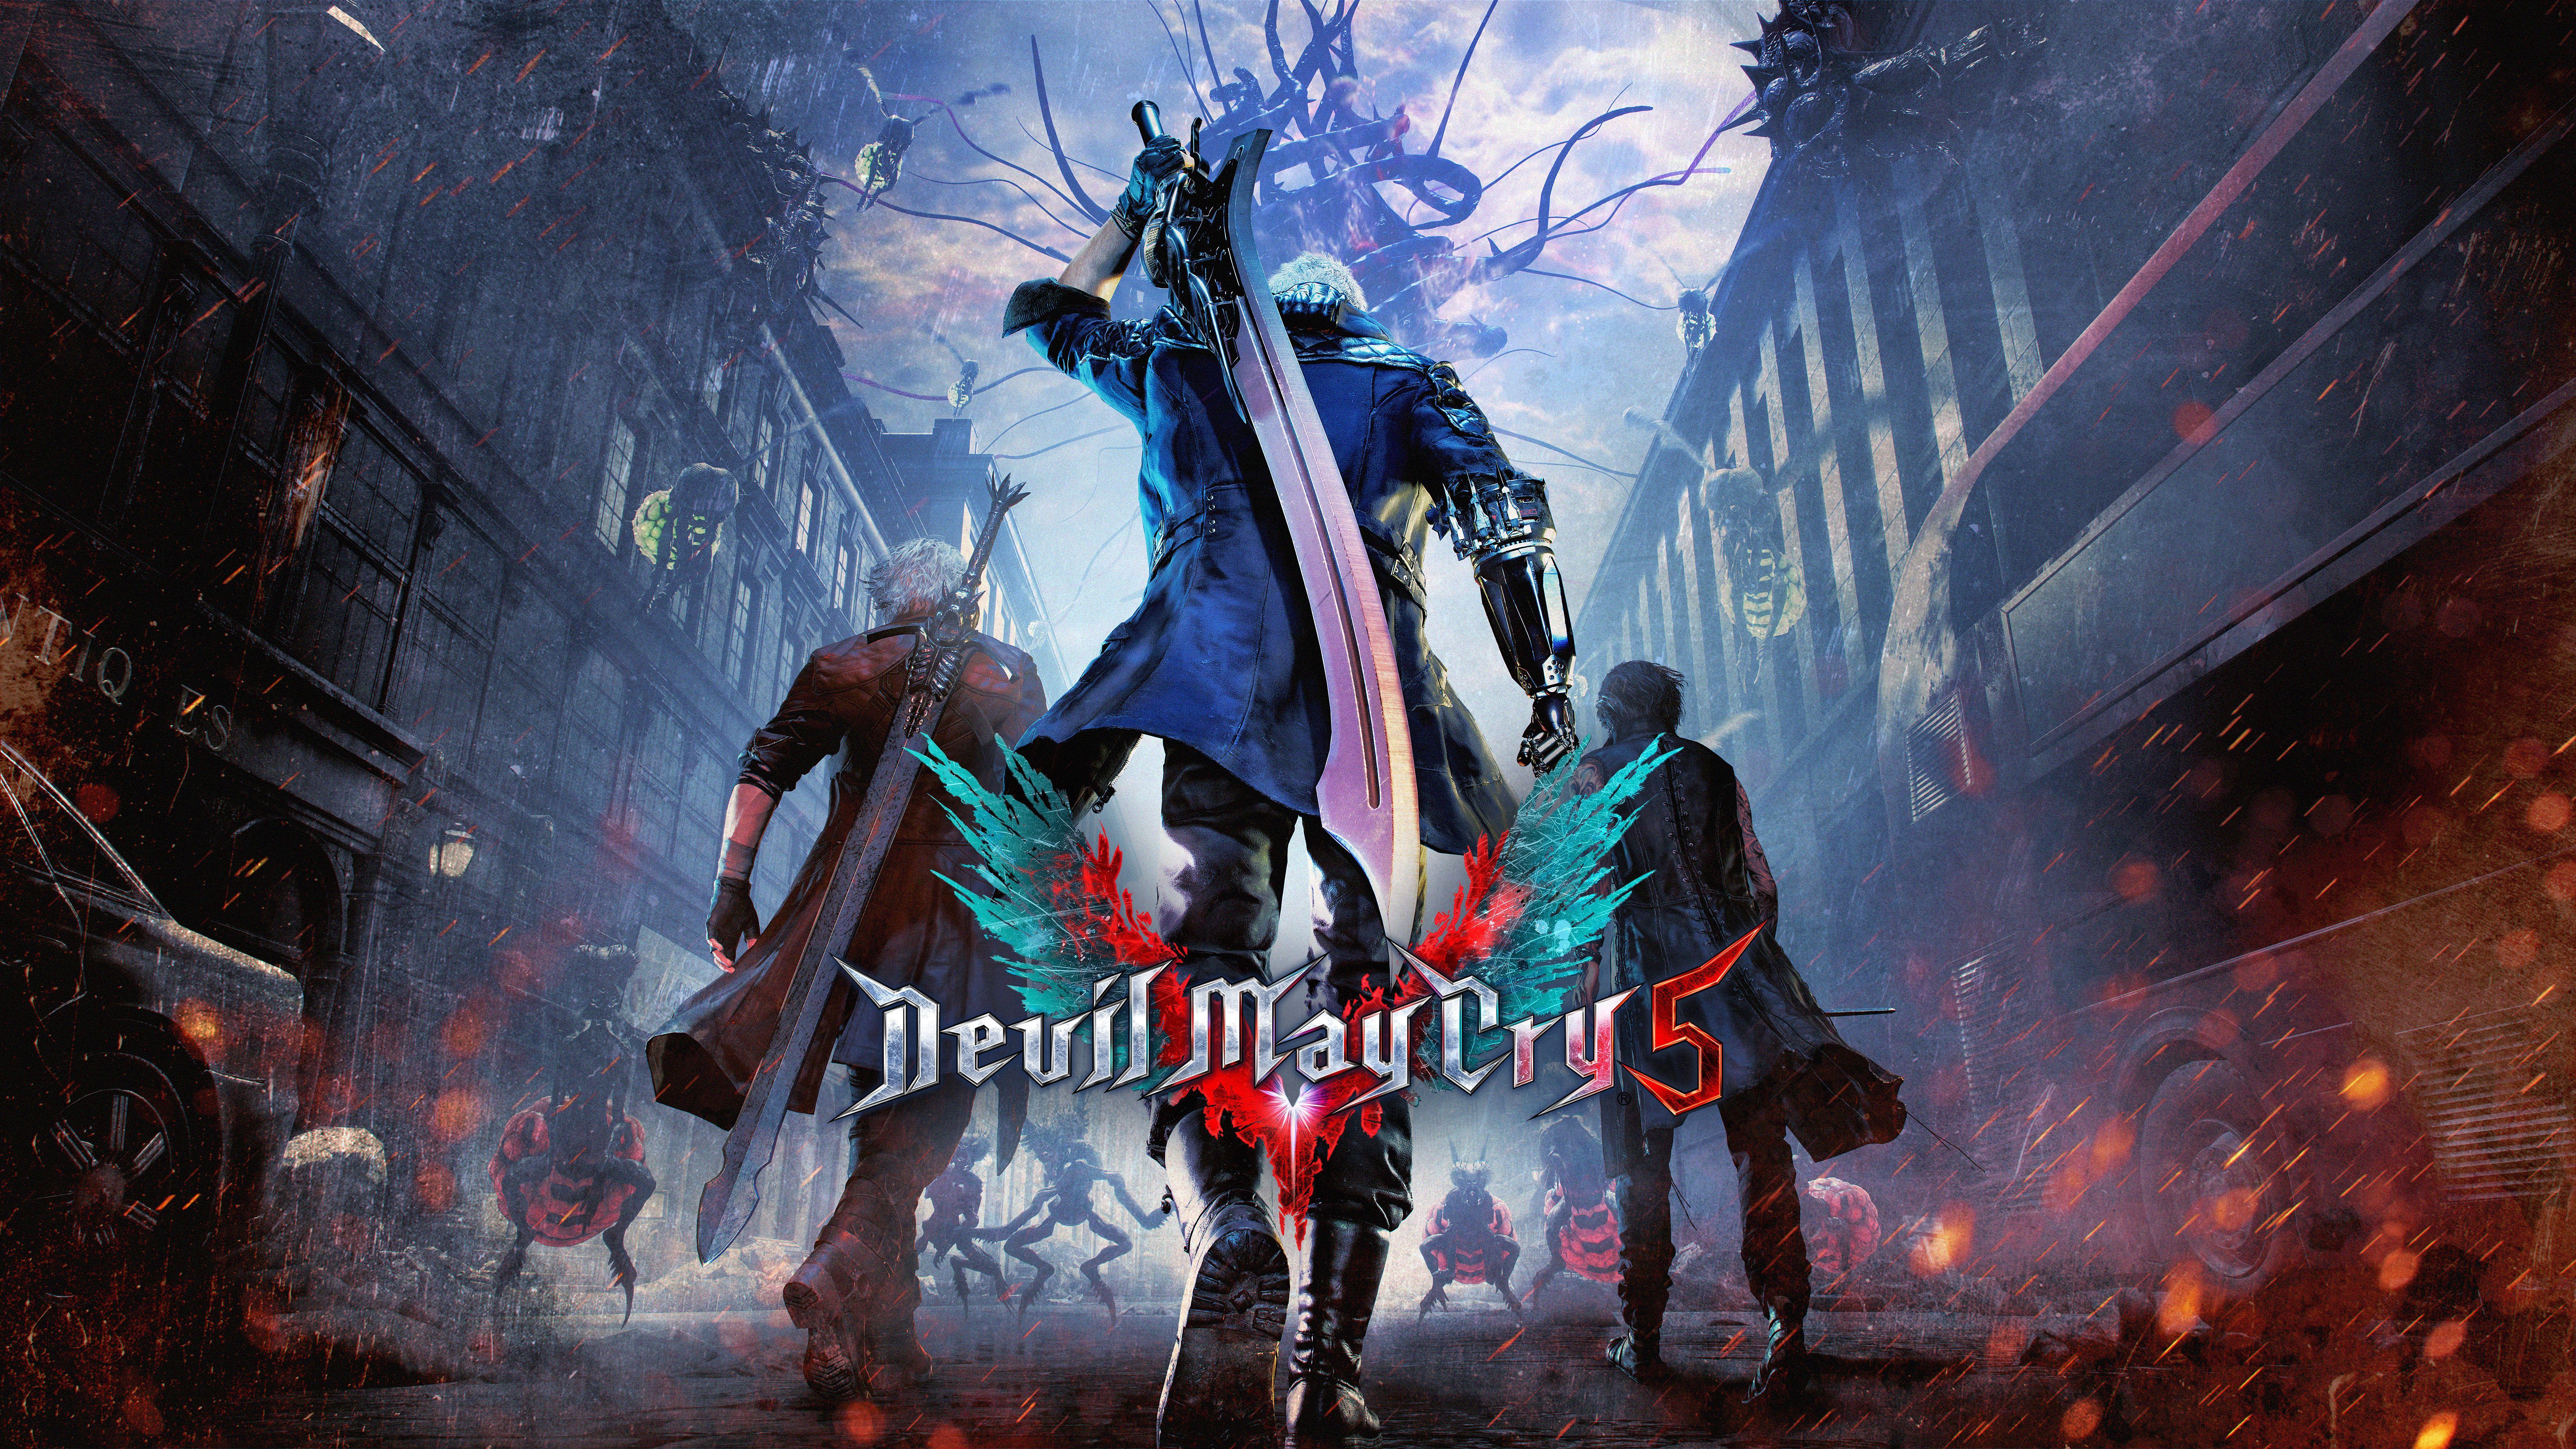 Wallpaper Devil May Cry Dante, Nero, E3 4K, 8K, 2019 Games